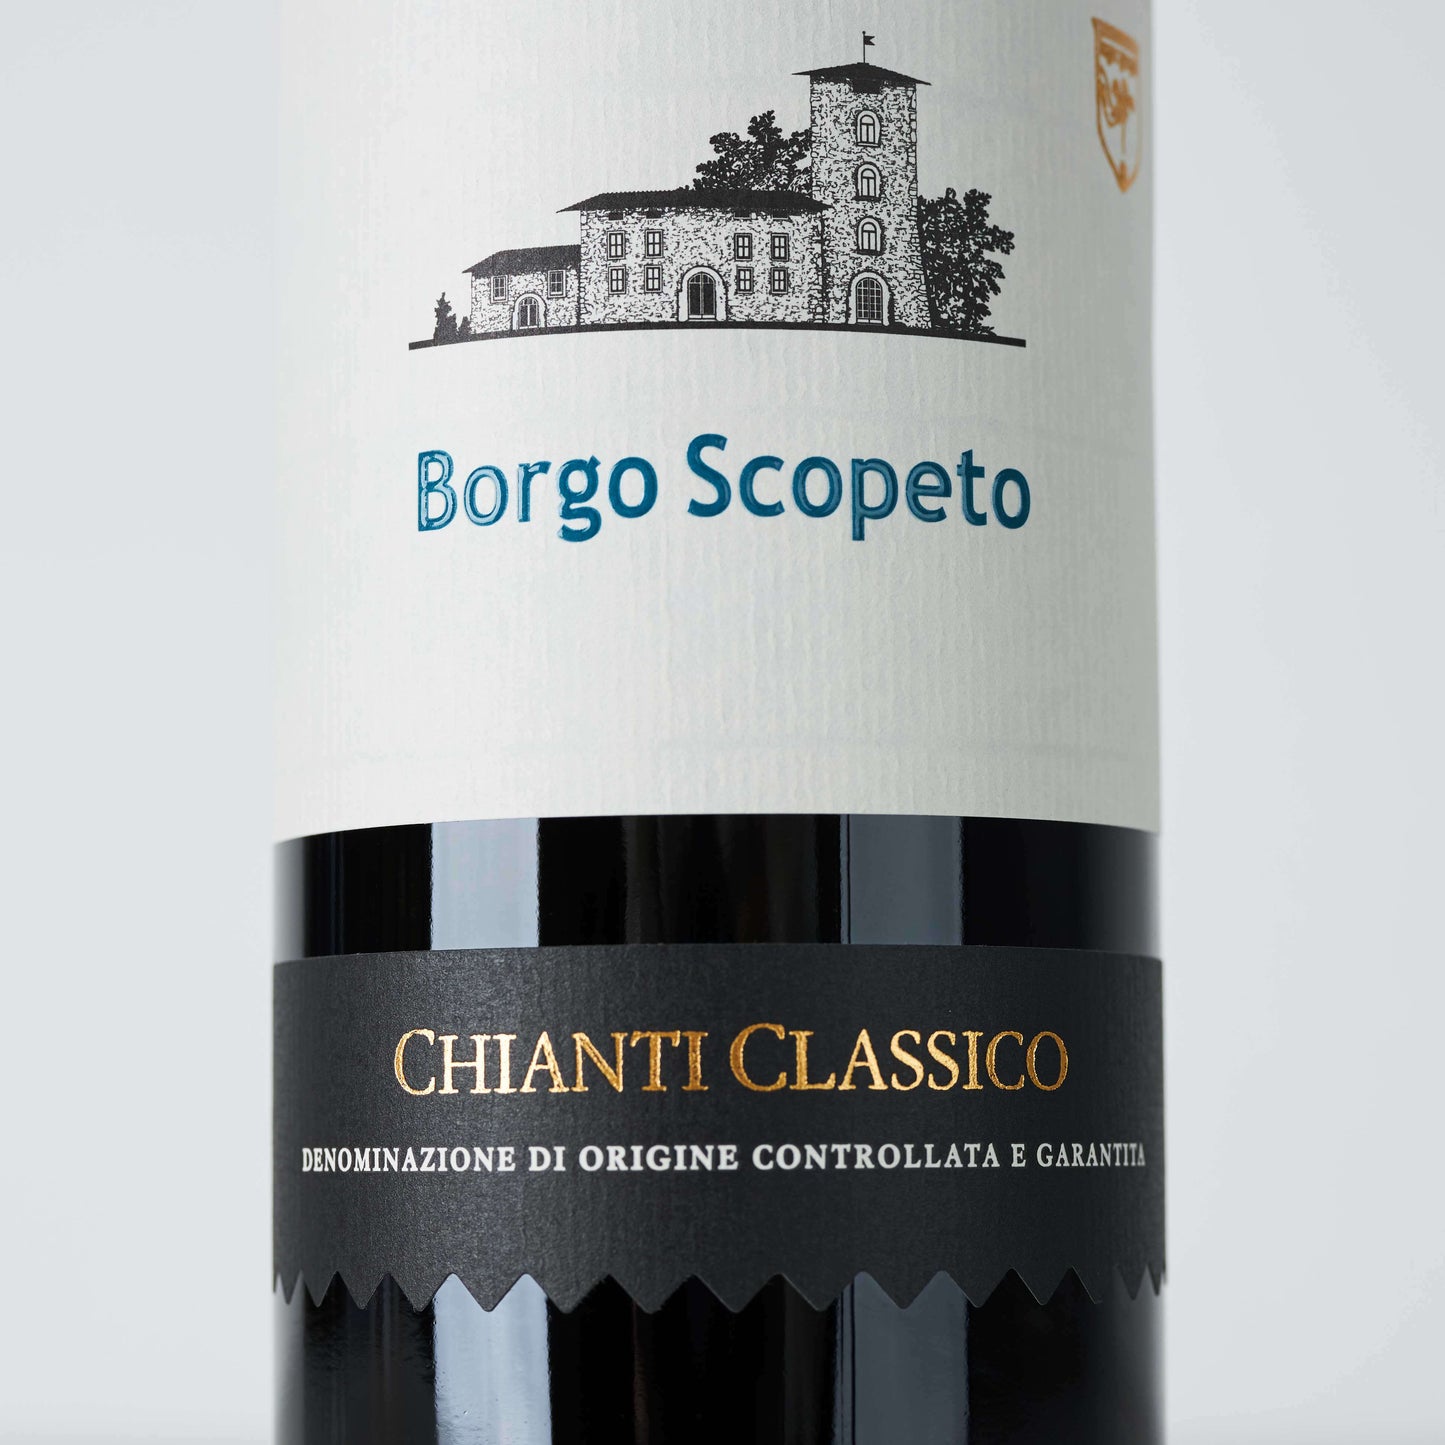 Rotweinflasche stehend, weißes Etikett mit blauer Aufschrift: " Borgo Scopeto, Chianti Classico"